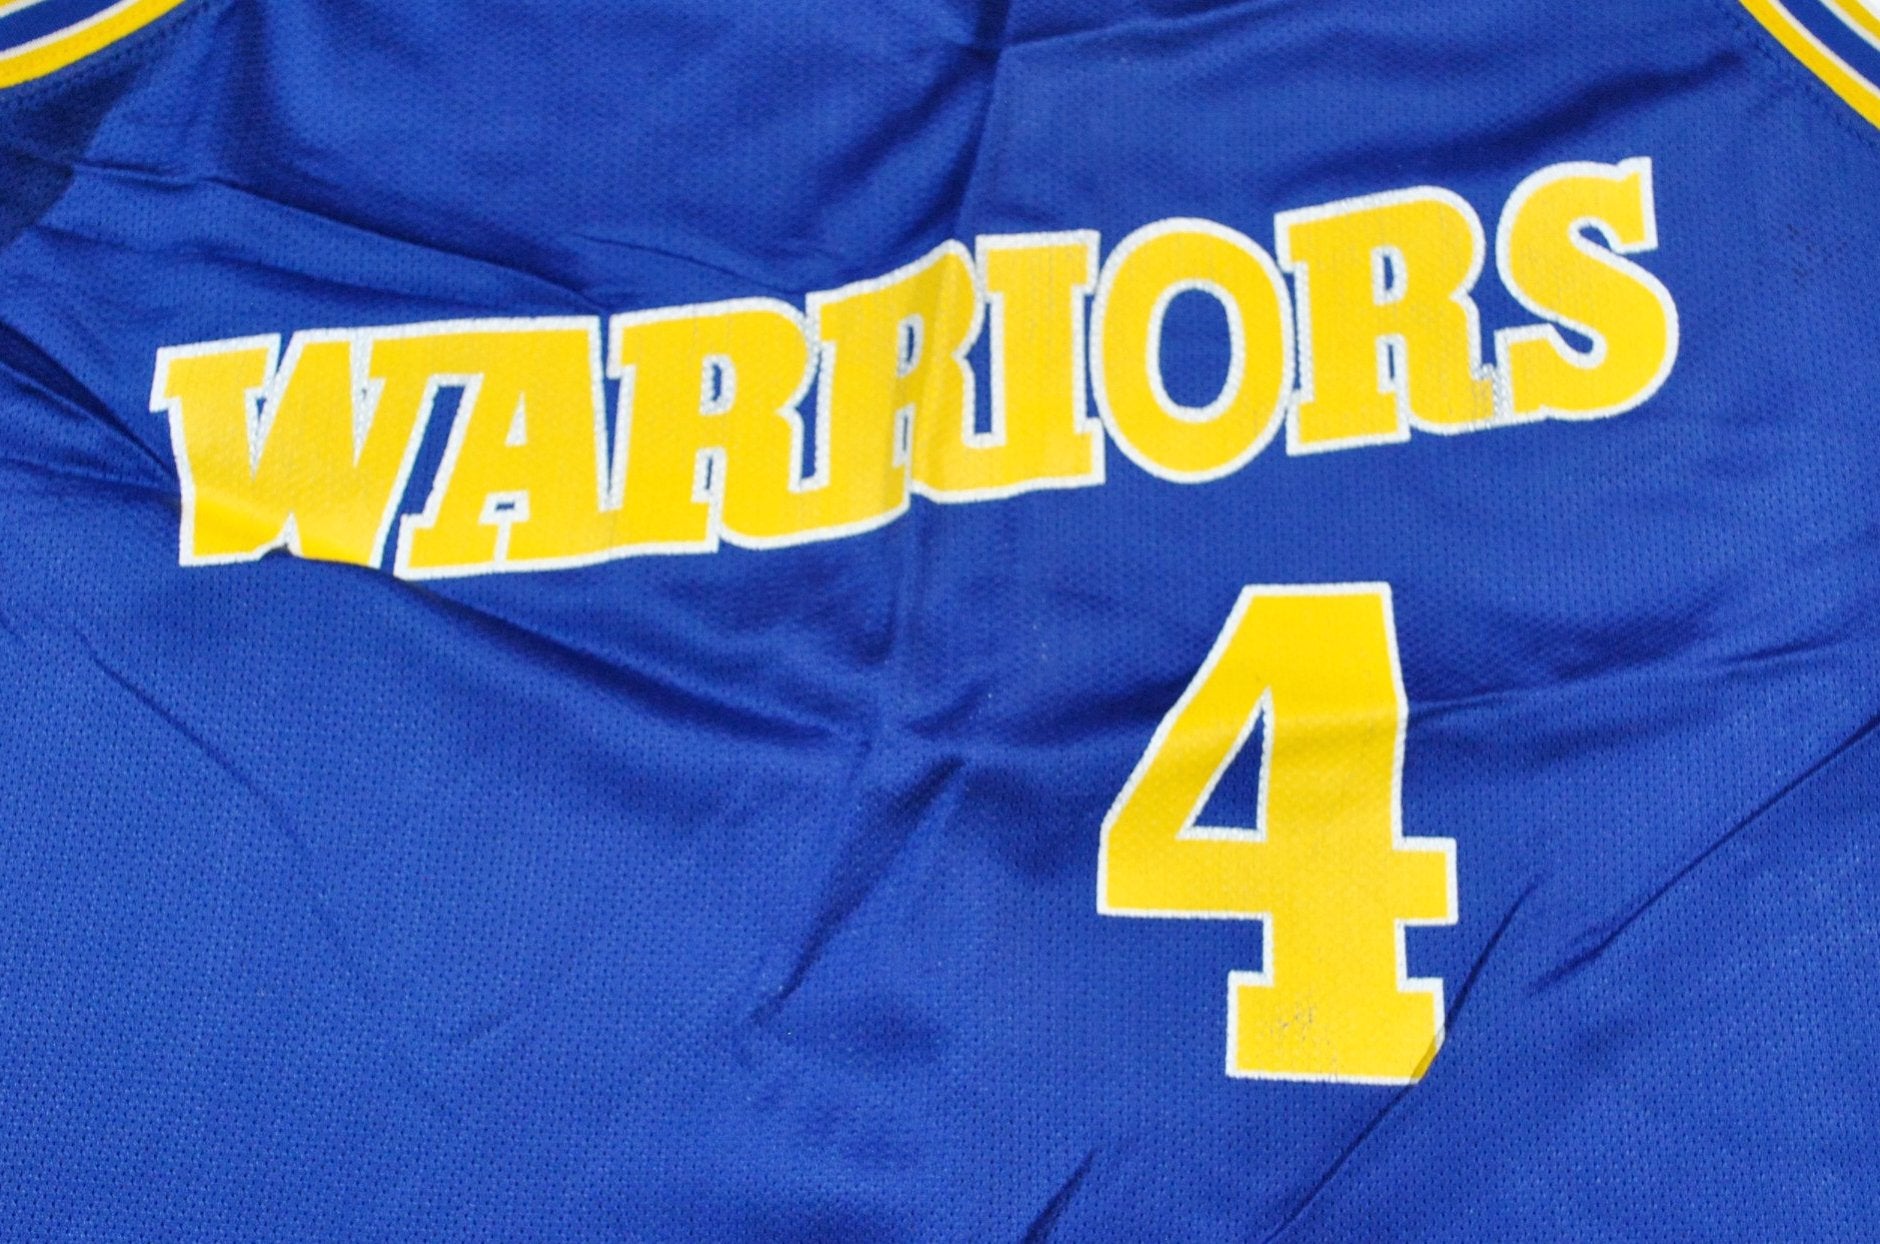 warriors jersey 4